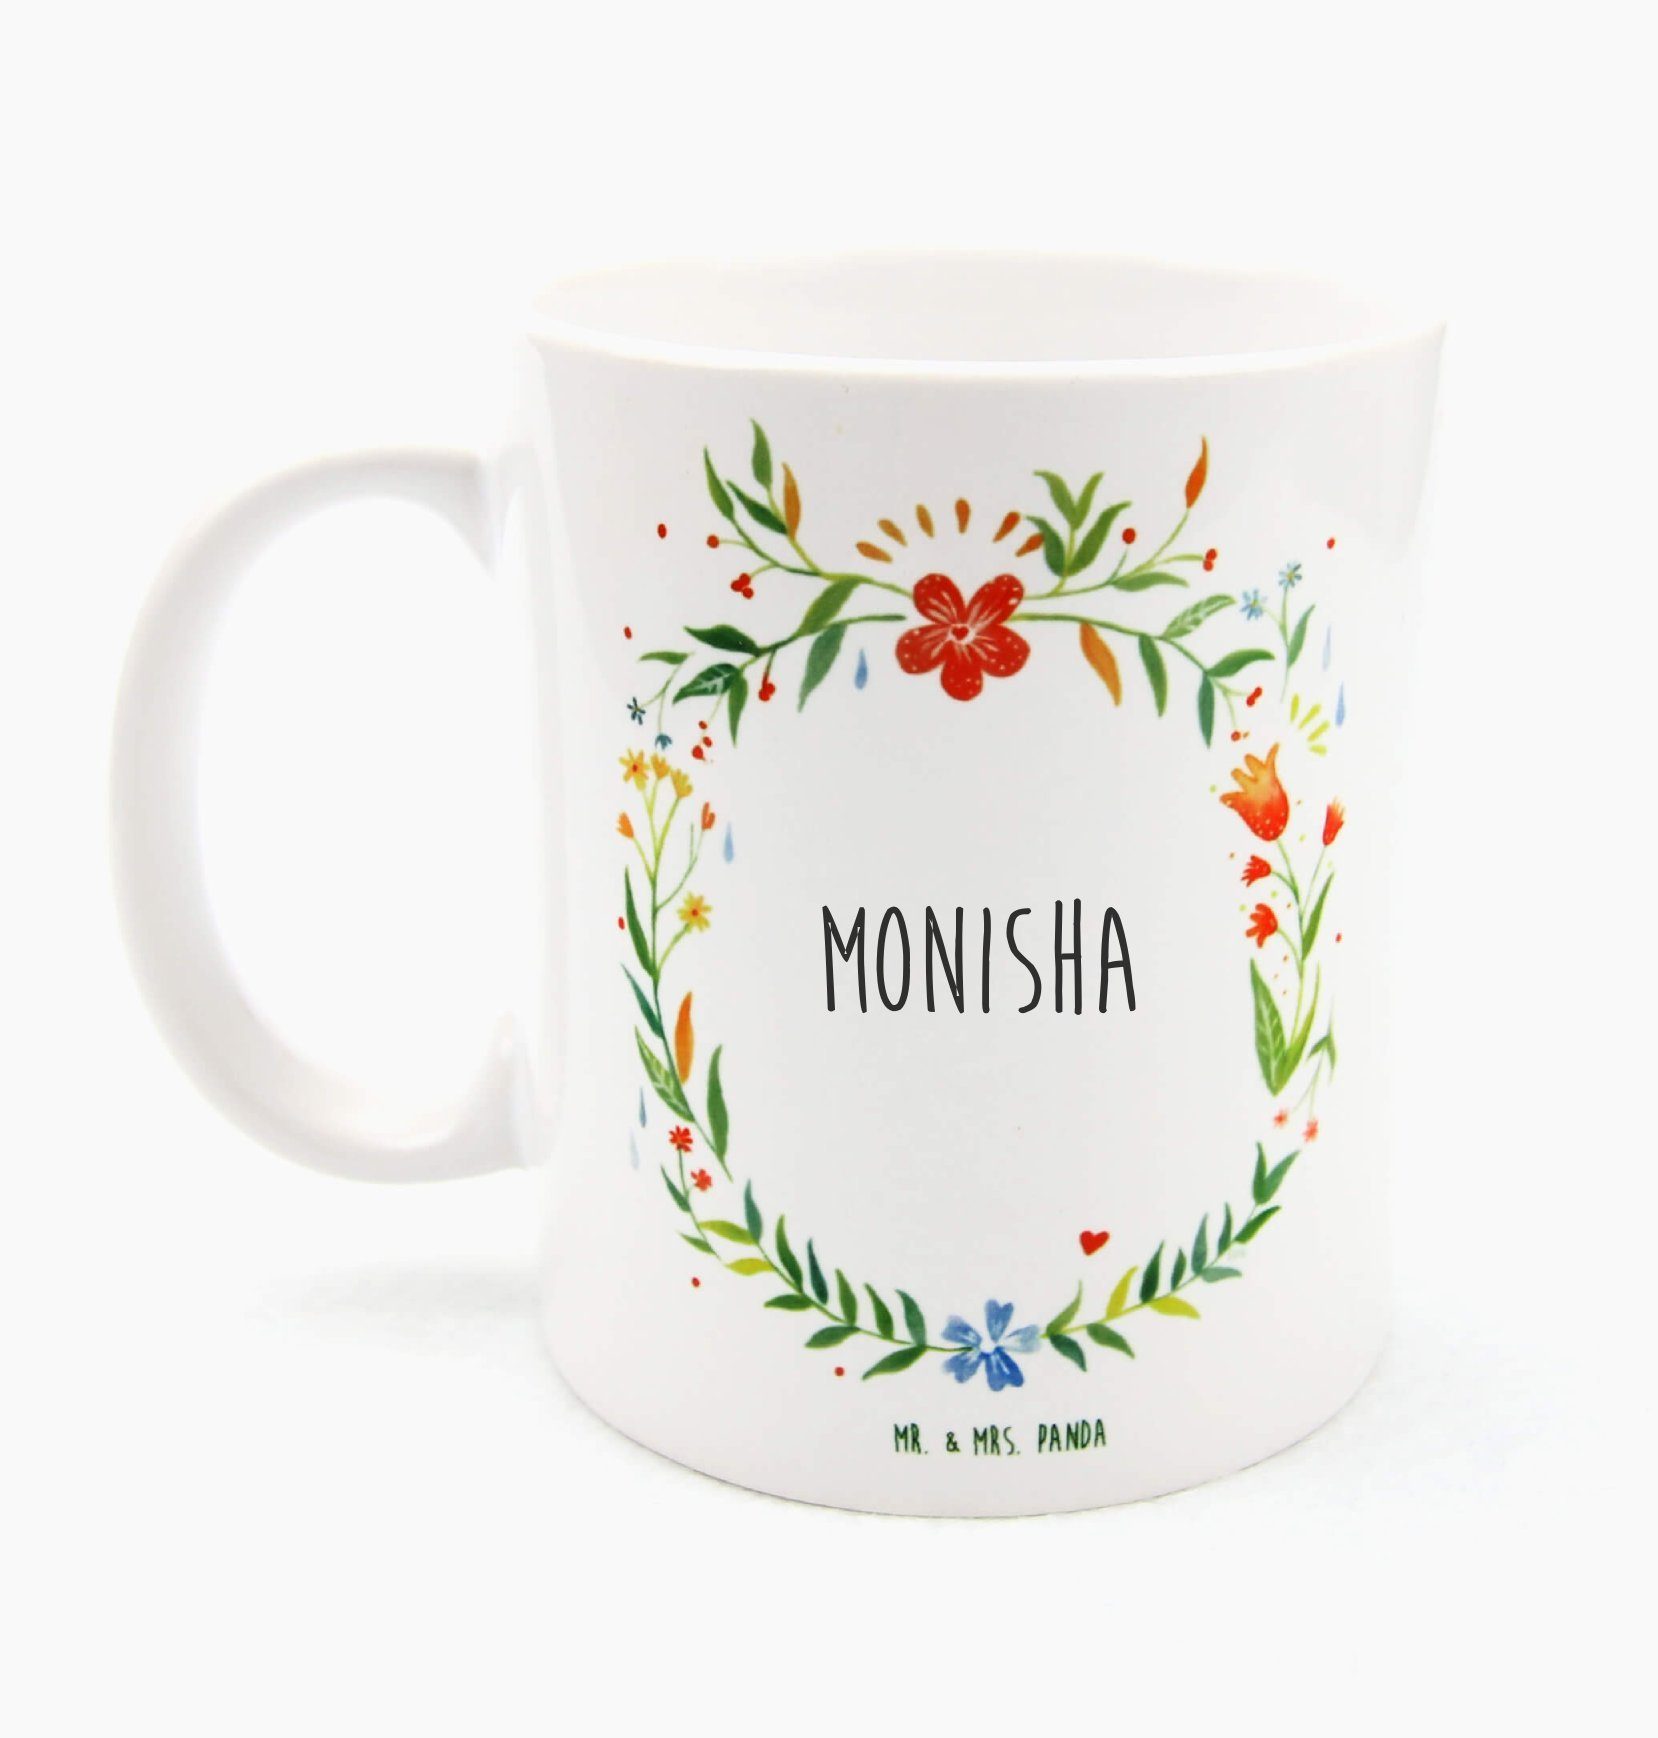 Mr. & Mrs. Panda Tasse Monisha - Geschenk, Kaffeetasse, Keramiktasse, Teetasse, Tasse Motive, Keramik